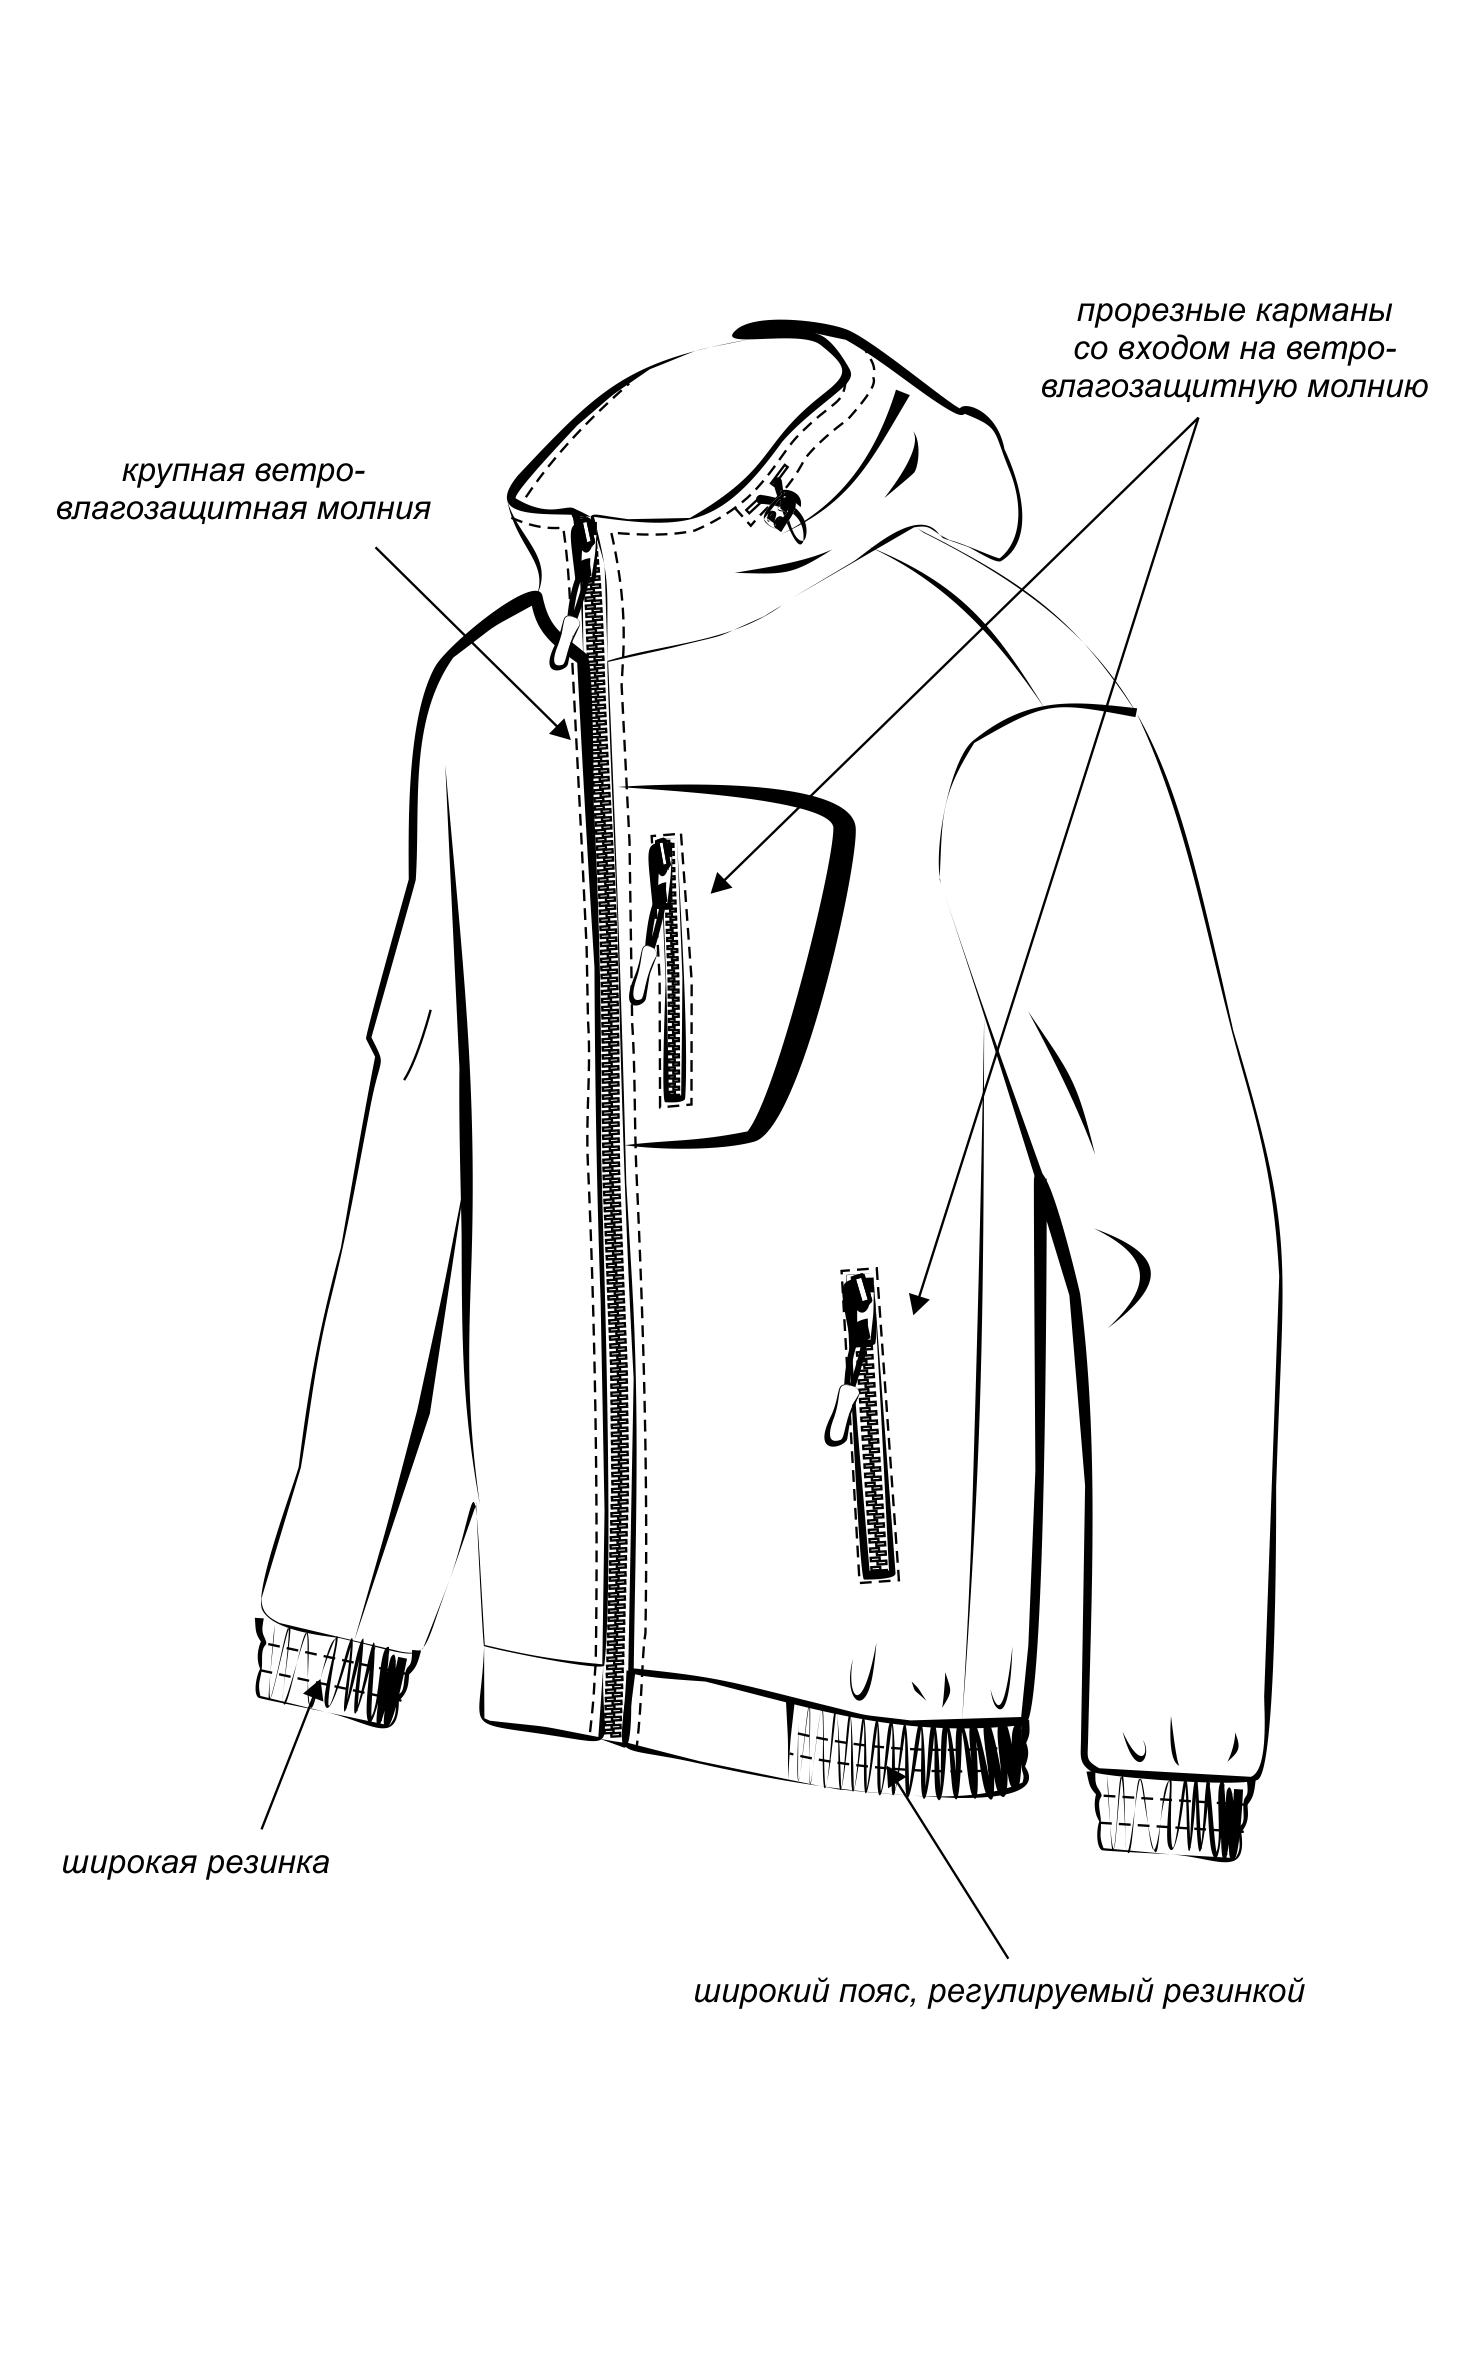 Костюм "ТУРИСТ 1" куртка/брюки цвет: камуфляж "Колючка зеленый", ткань: Грета